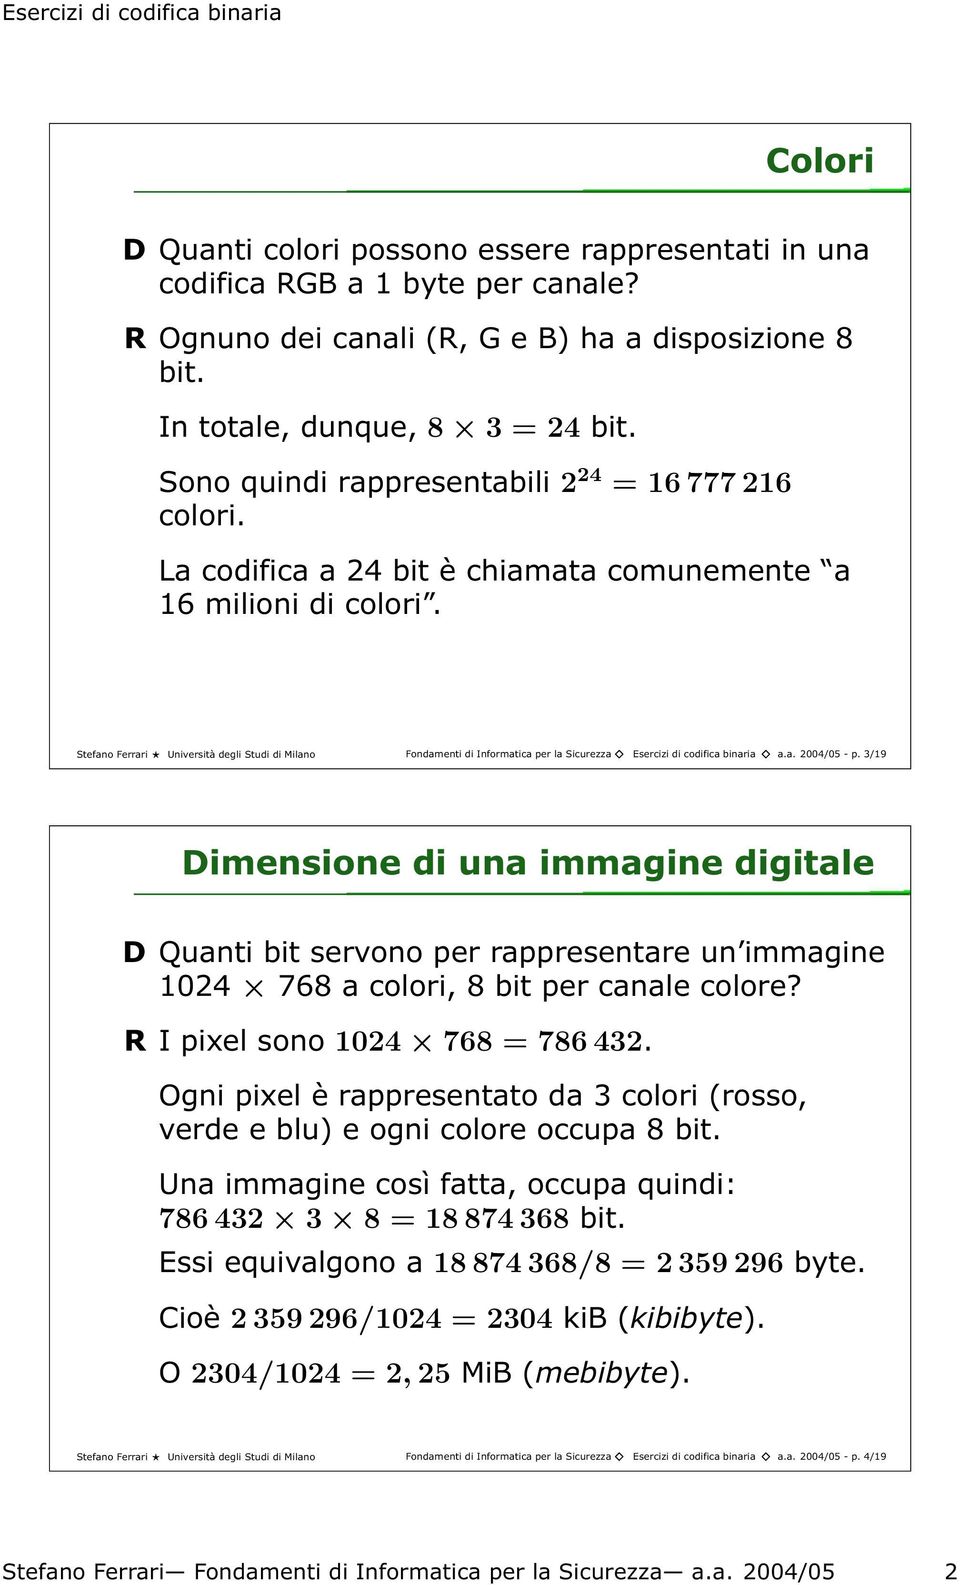 Stefano Ferrari Università degli Studi di Milano Fondamenti di Informatica per la Sicurezza Esercizi di codifica binaria a.a. 2004/05 - p.